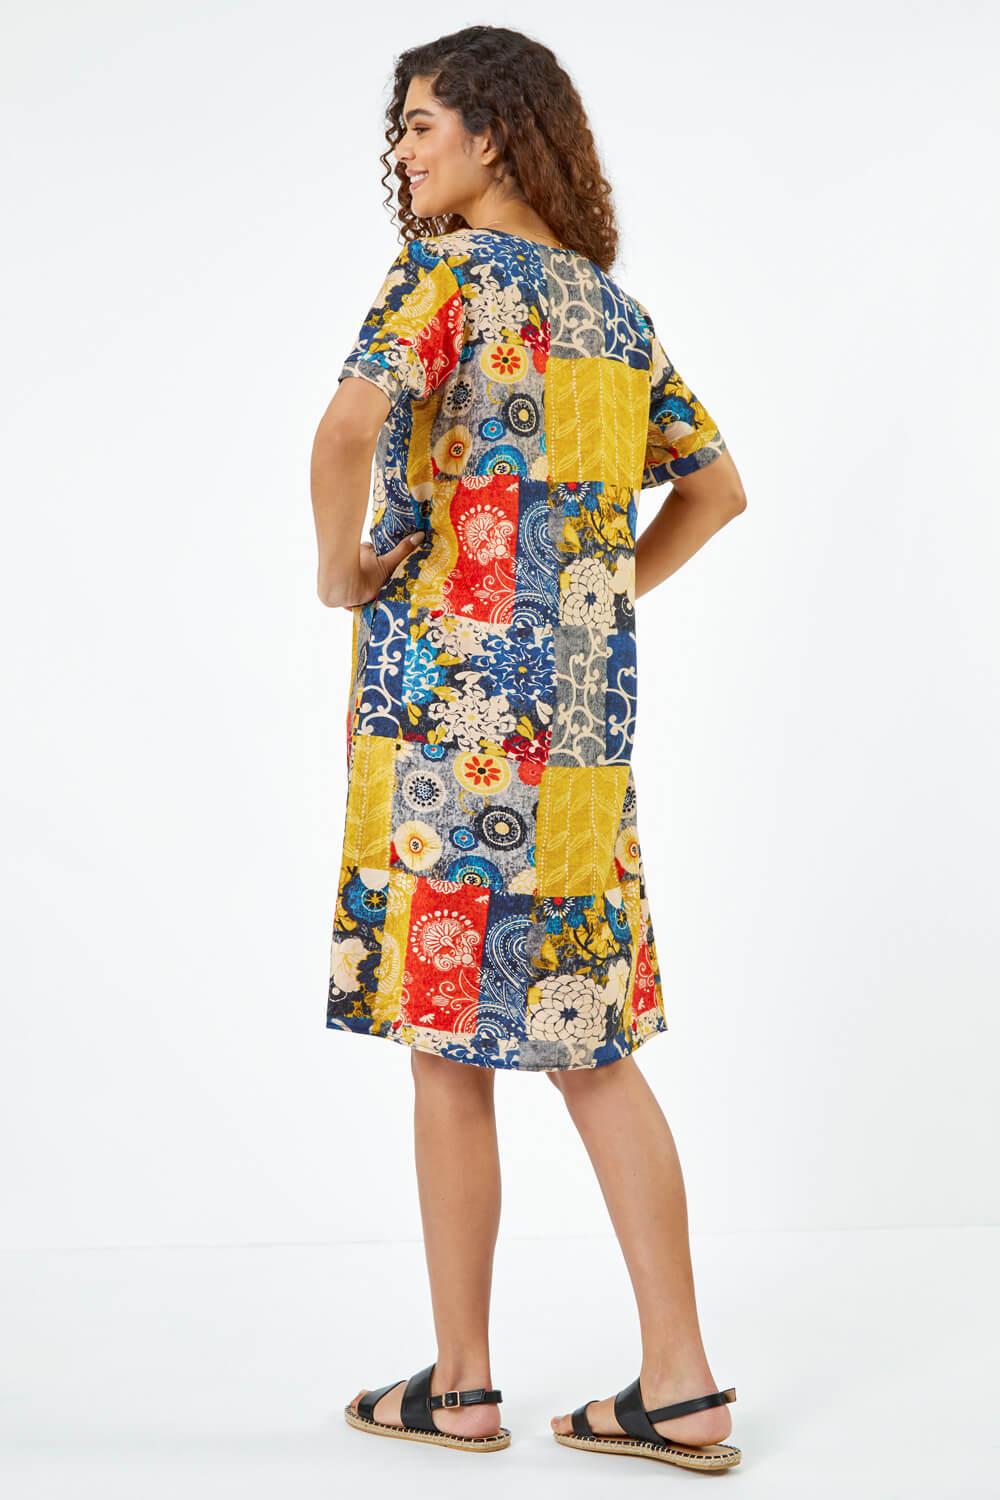 Amber Patchwork Print Pocket Shift Dress, Image 3 of 5